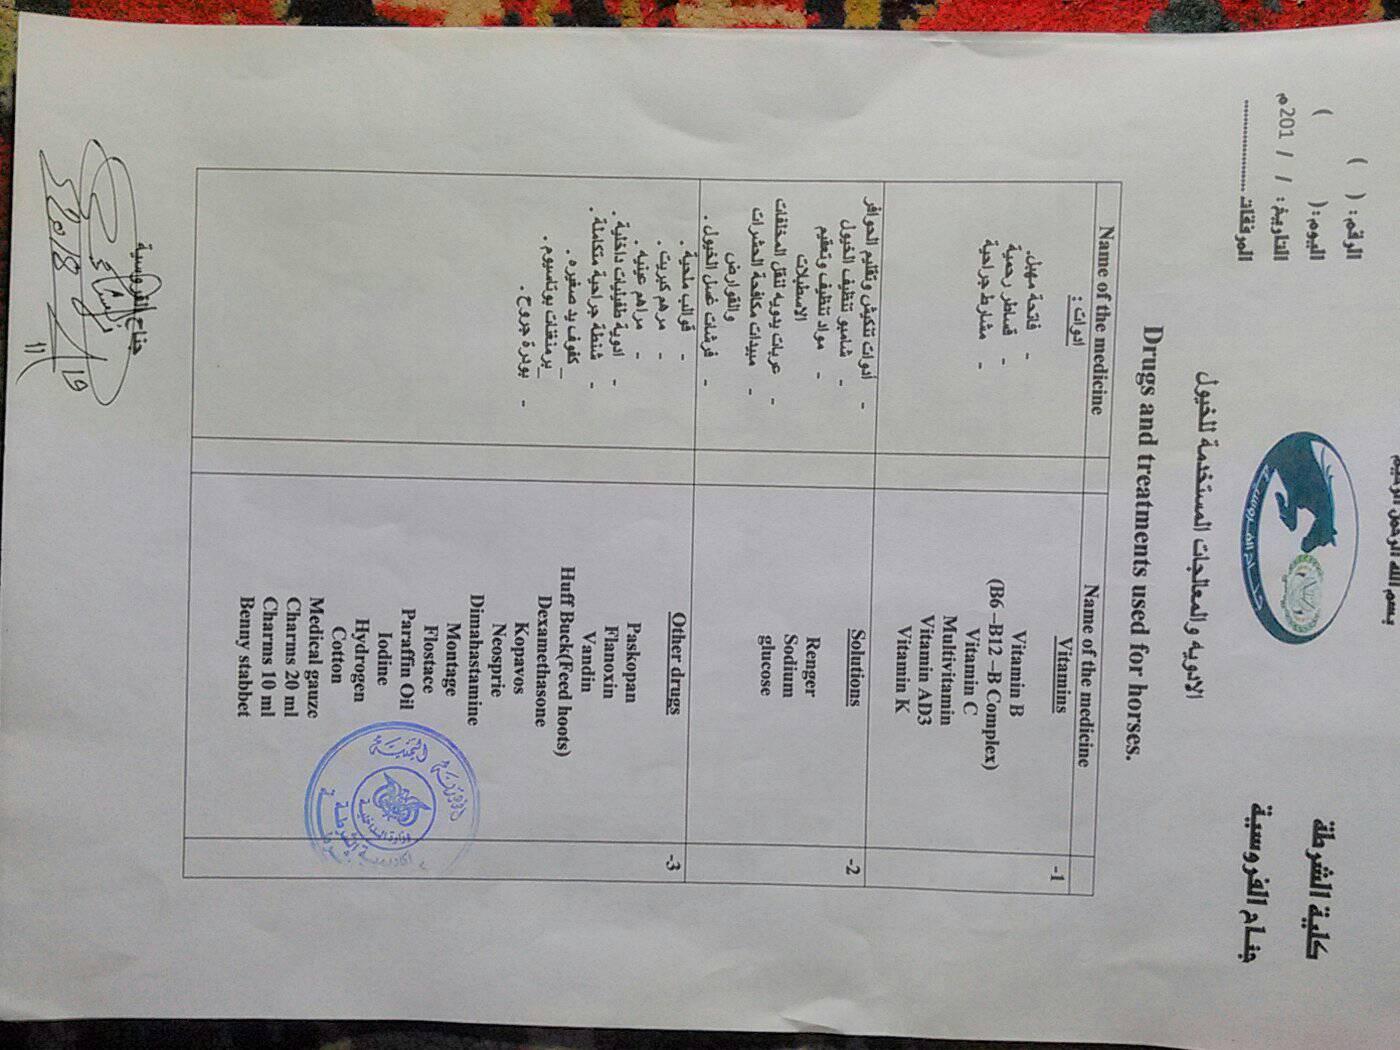 Police Ac from Salah vet The Police Academy sana'a Yemen for OWAP-AR 20 nov 2018 vet med list of requirements.jpg